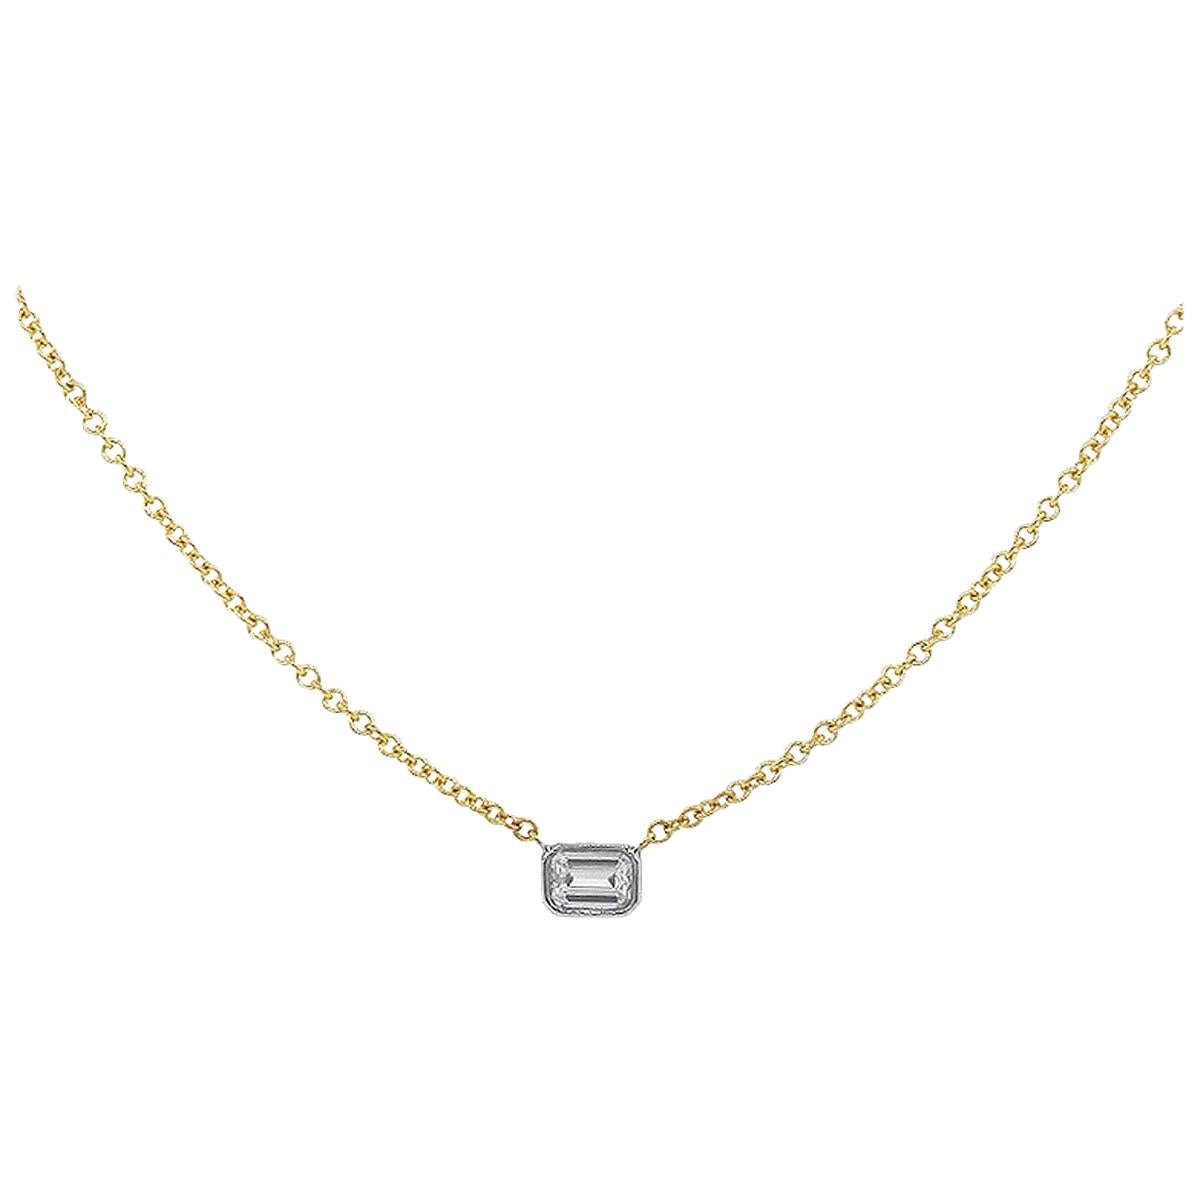 Emerald Cut Diamond Bezel Set Necklace